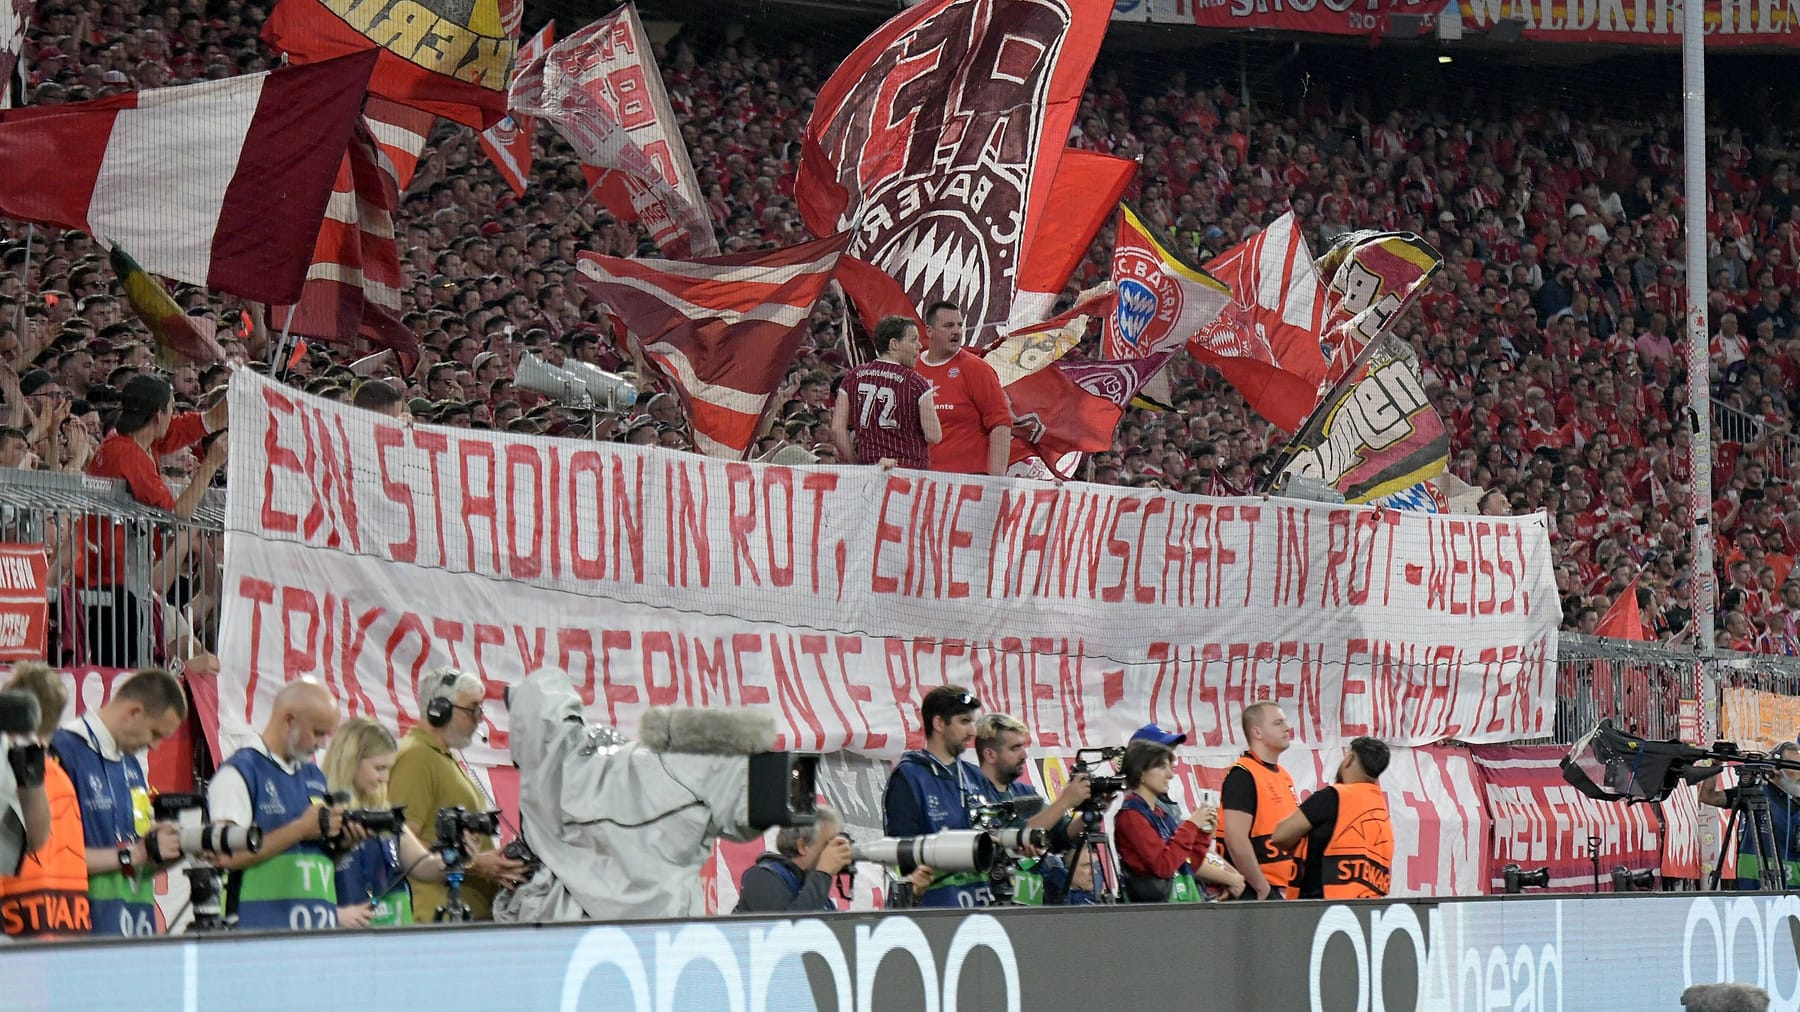 FC Bayern | Ultras machen Klubbossen eine klare Ansage: "Zusagen einhalten"